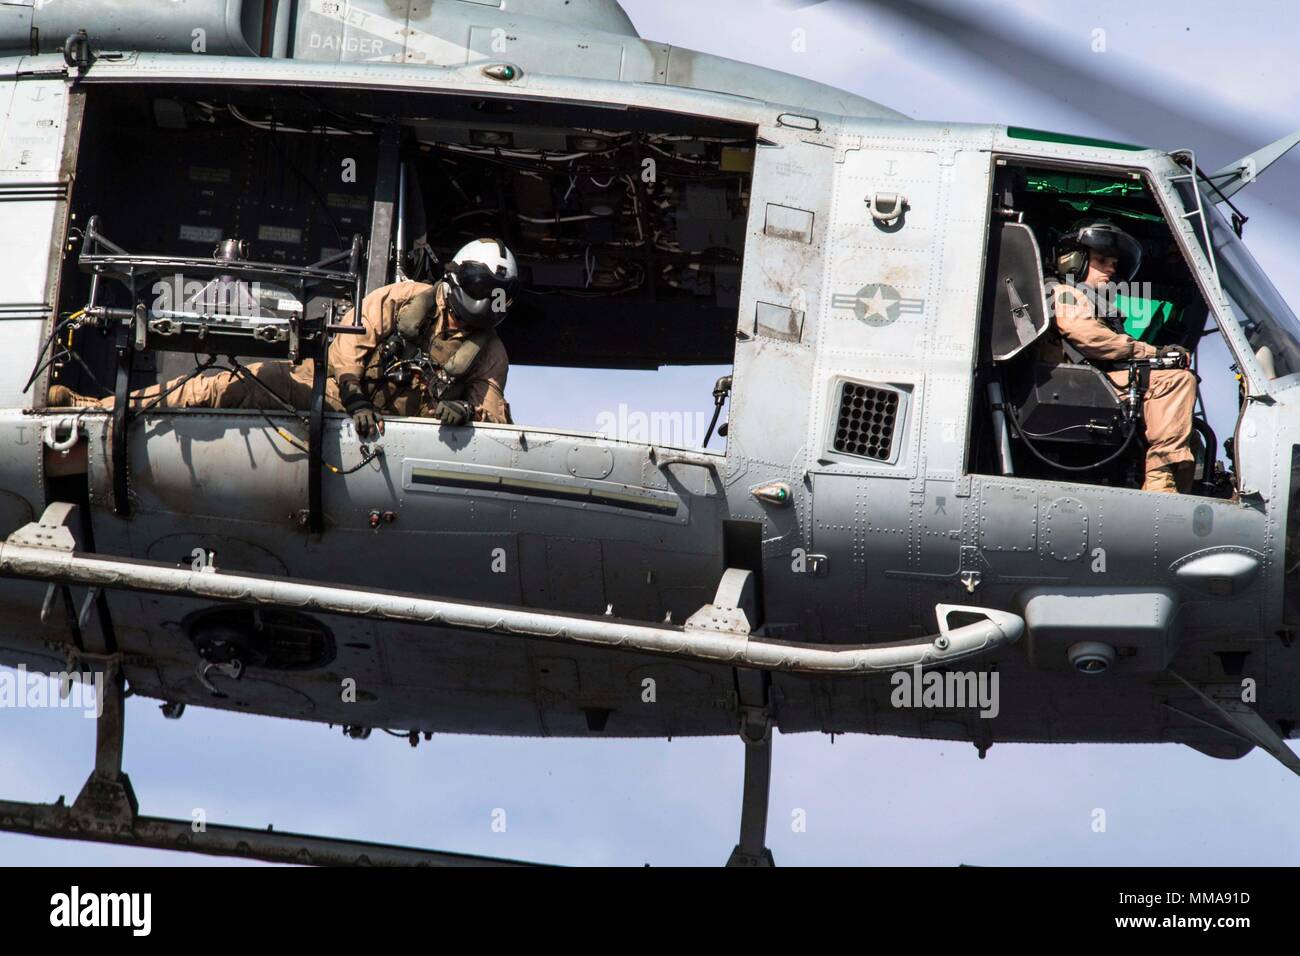 170928-N-BK 384-408 MITTELMEER (Sept. 28, 2017) US Marine Lance Cpl. Kane Hensley, von Virginia Beach, Virginia, und Marine Medium Tiltrotor Squadron (VMM) 161 (verstärkt) zugewiesen wird, überprüft die Entfernung vom Helikopter in das Flight Deck der San Antonio-Klasse amphibious Transport dock Schiff USS San Diego LPD (22) Bei Flugbetrieb Sept. 28, 2017. San Diego ist, implementiert mit der Amerika Amphibious Ready Gruppe und dem 15 Marine Expeditionary Unit maritime Sicherheit und Theater die sicherheitspolitische Zusammenarbeit in den Bemühungen, die in den USA 6 Flotte Bereich der Aktivitäten zu unterstützen. (U.S. Marine Stockfoto